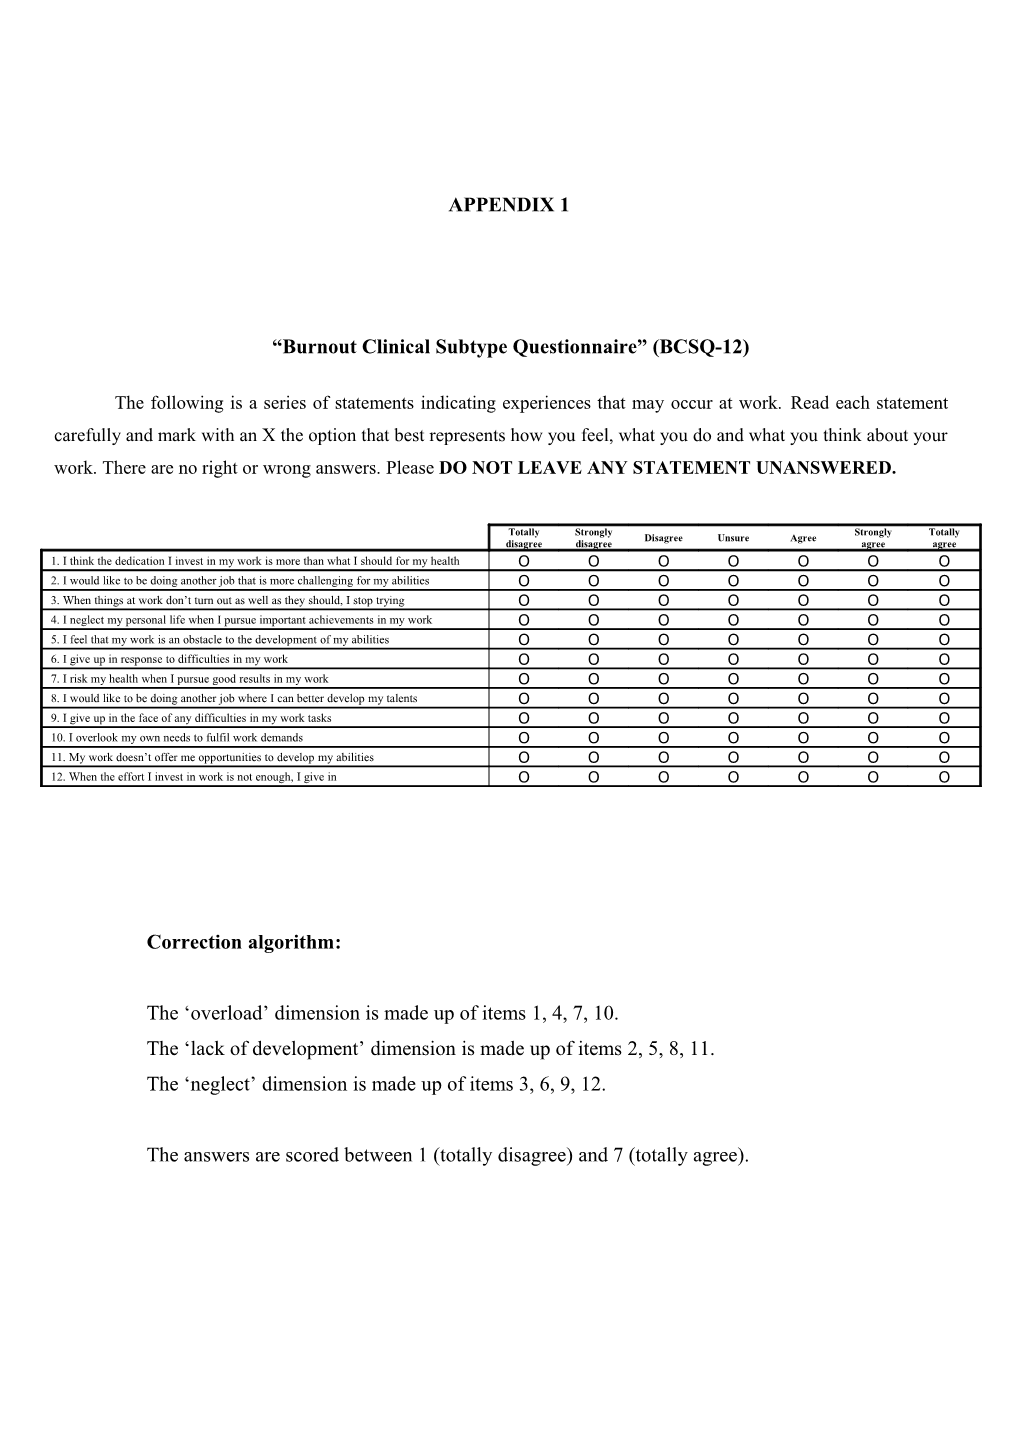 Burnout Clinical Subtype Questionnaire (BCSQ-12)